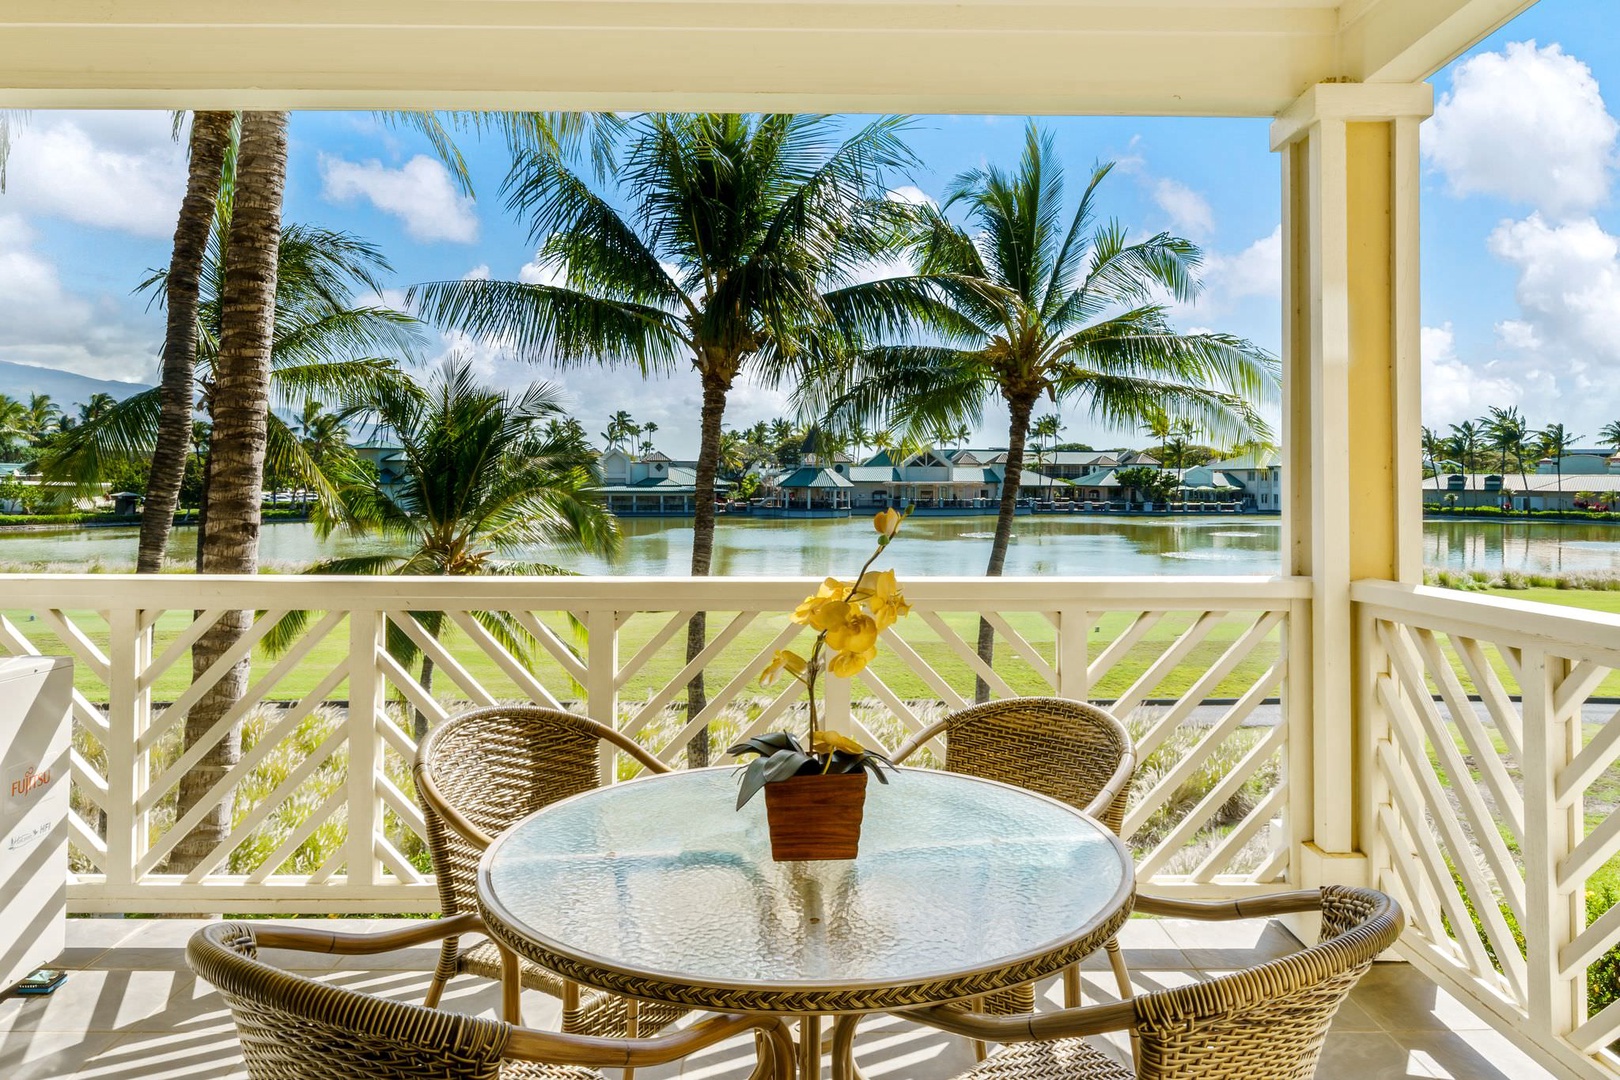 Fairway Villas N23 at the Waikoloa Beach Resort